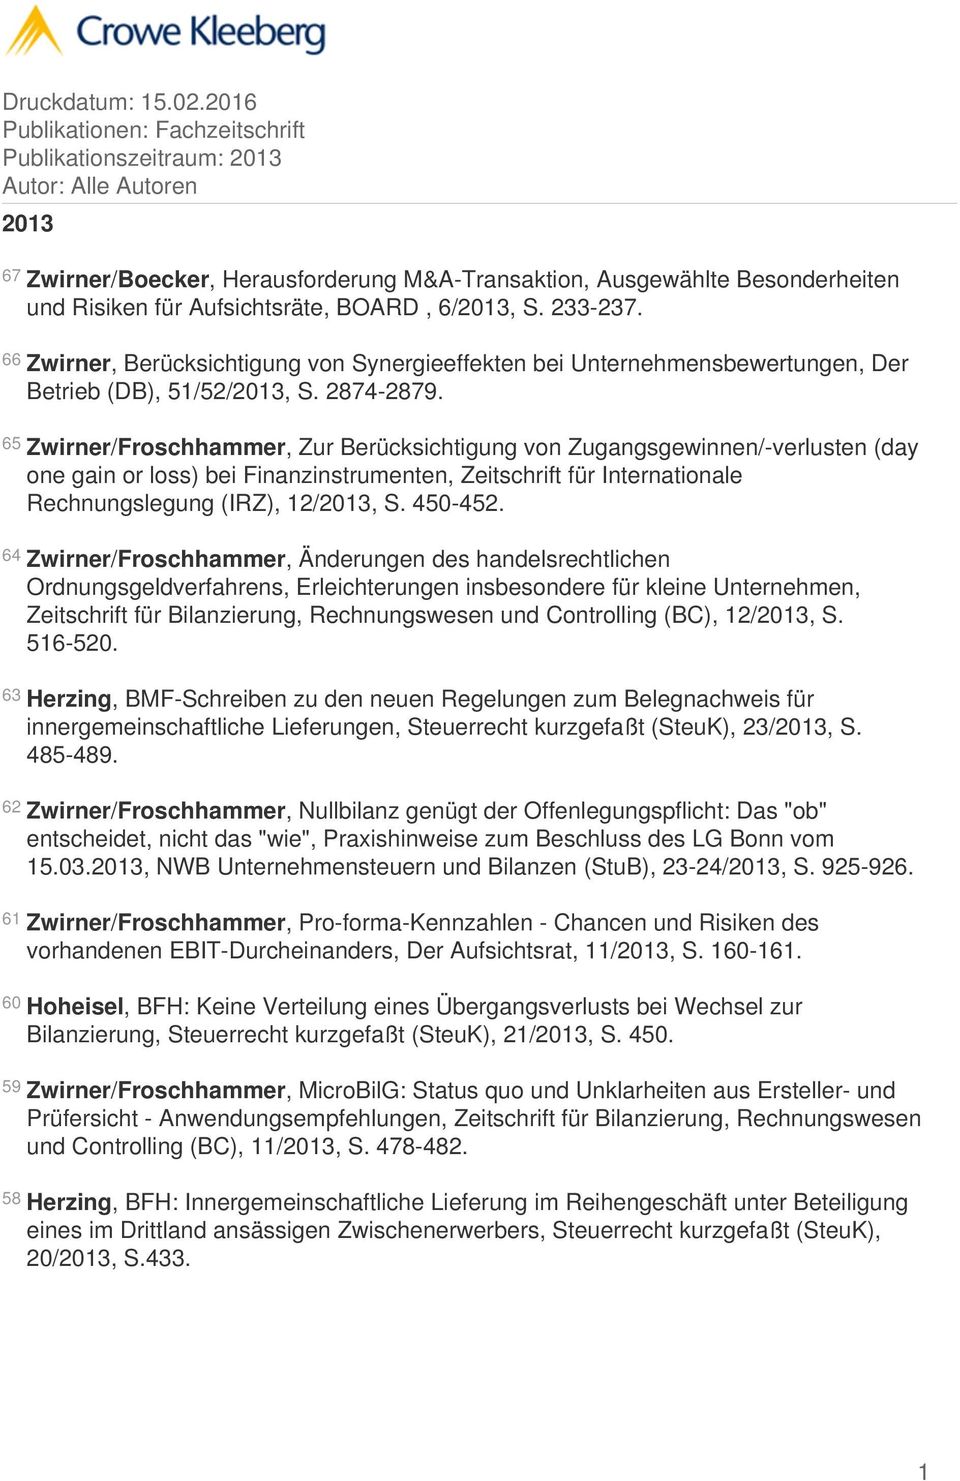 65 Zwirner/Froschhammer, Zur Berücksichtigung von Zugangsgewinnen/-verlusten (day one gain or loss) bei Finanzinstrumenten, Zeitschrift für Internationale Rechnungslegung (IRZ), 12/2013, S. 450-452.